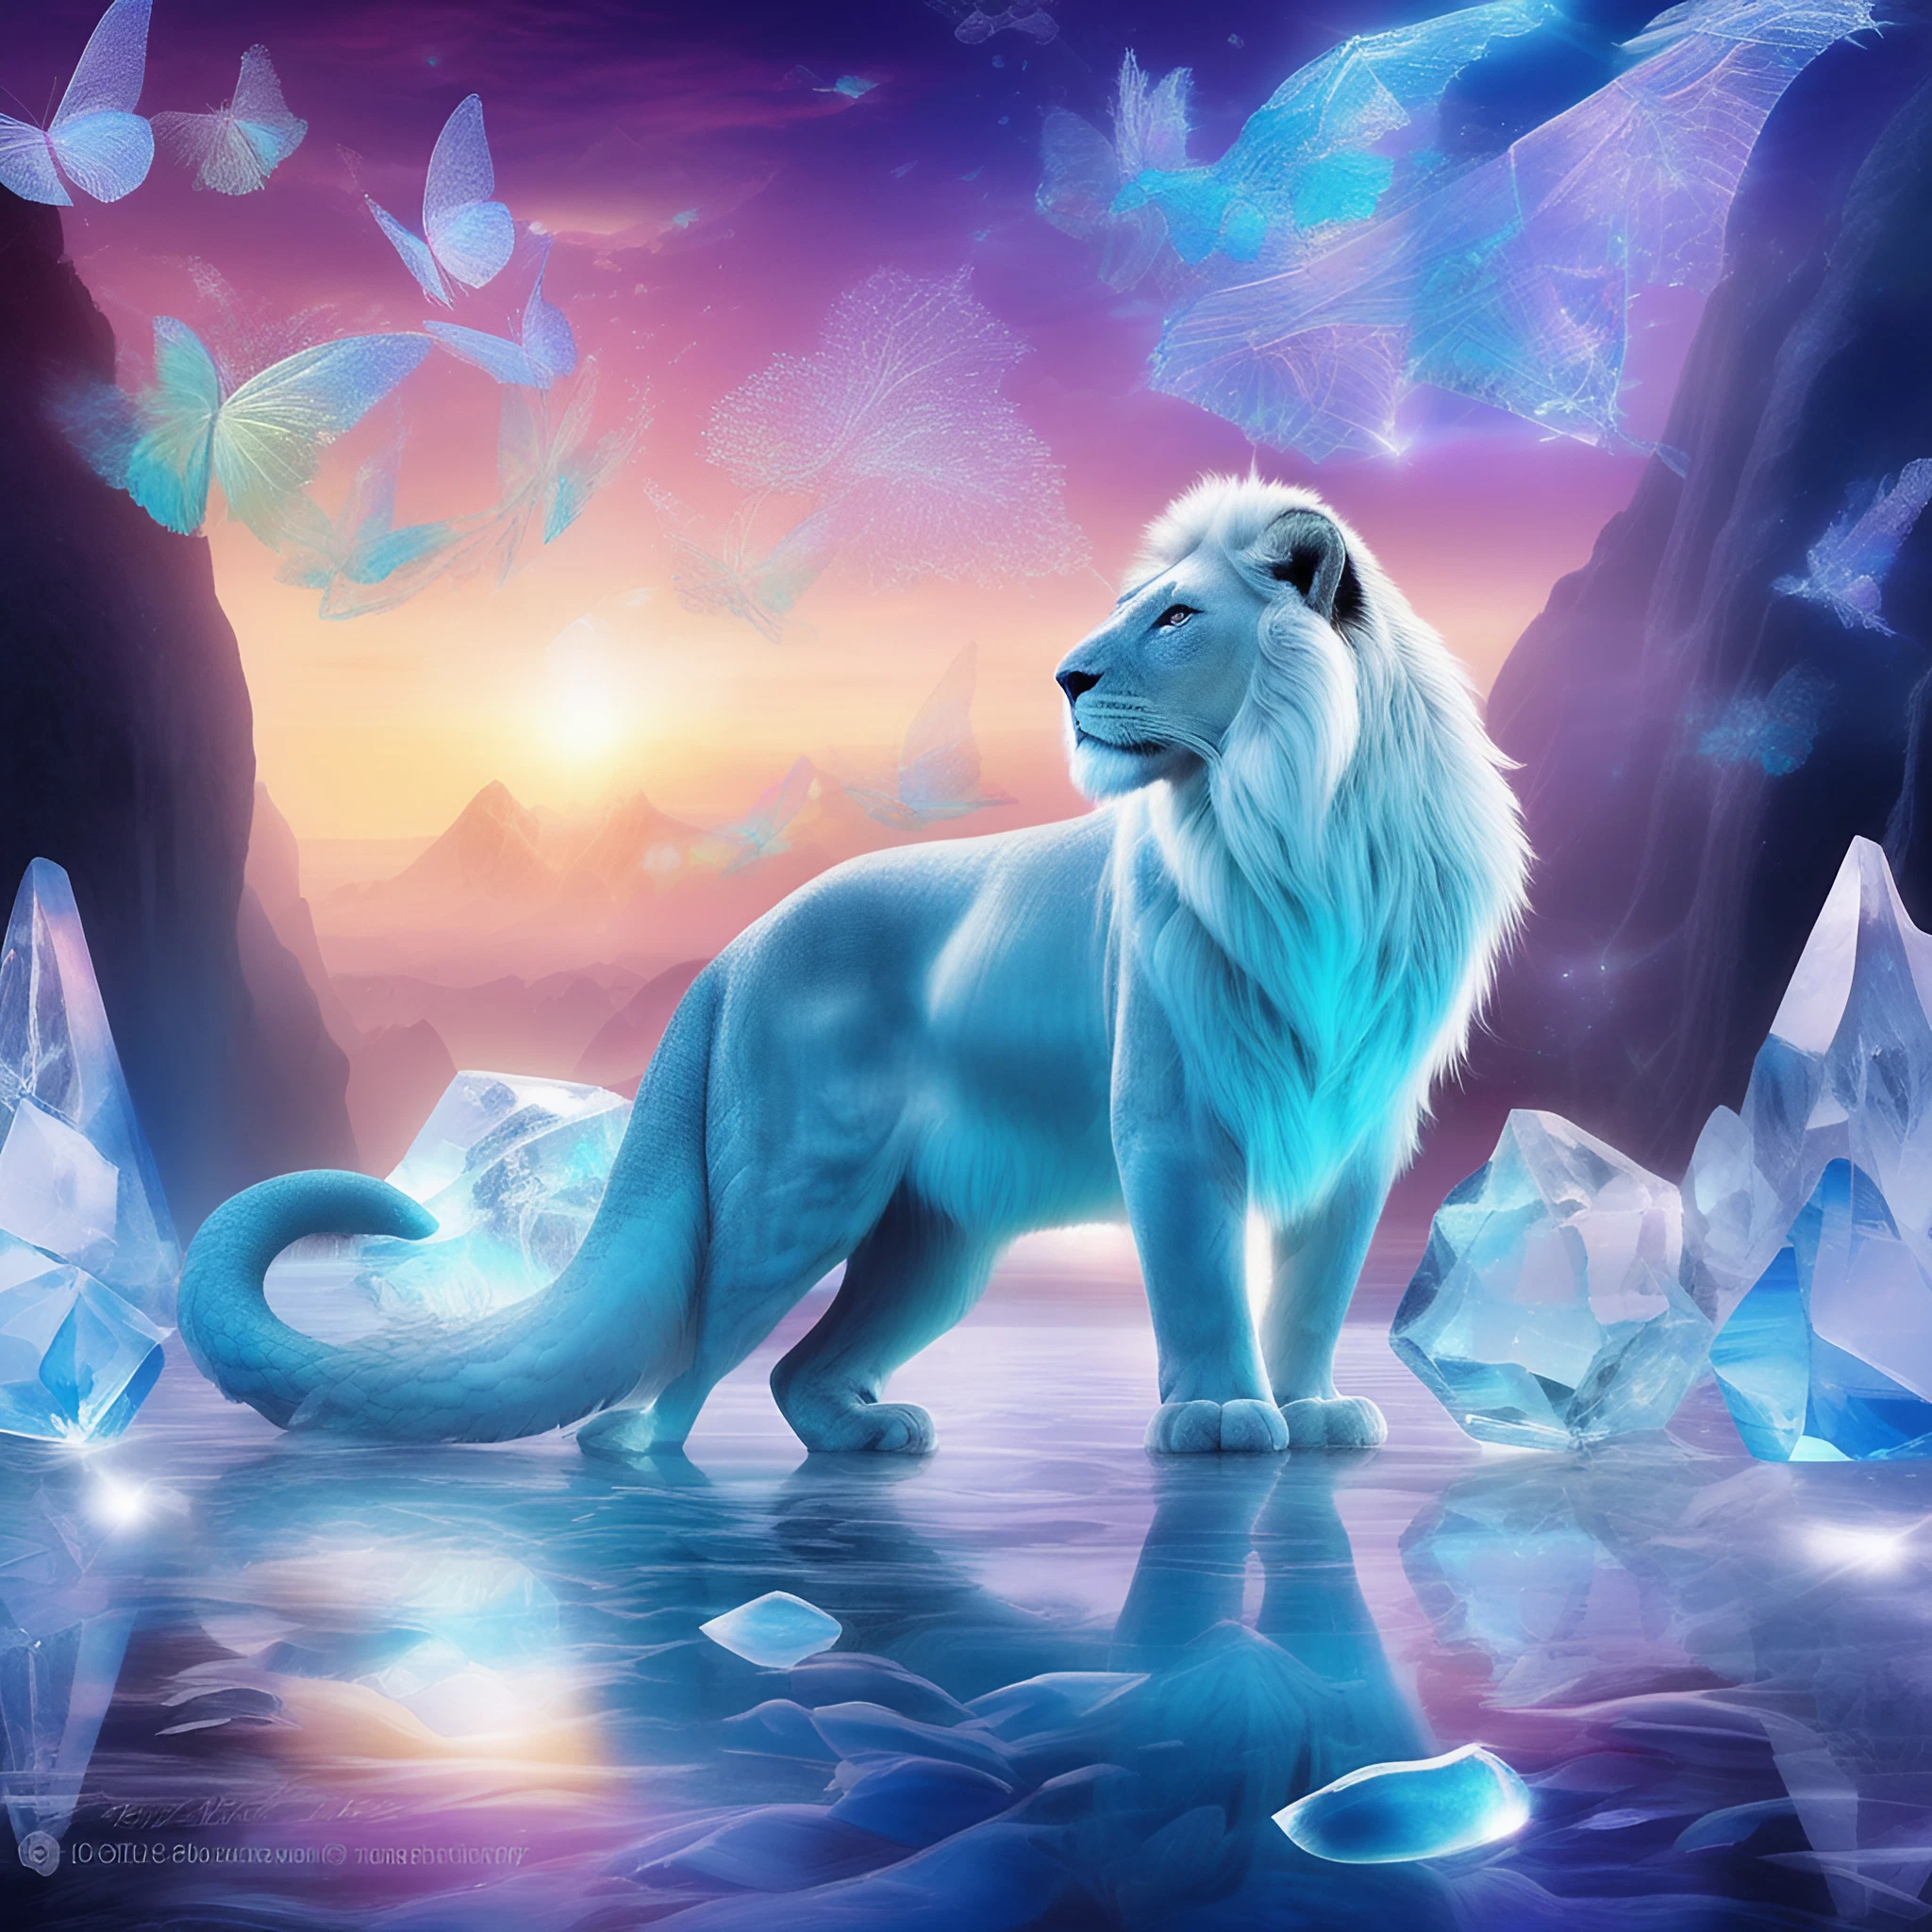 幻想的で美しい白いライオン＆神聖な聖獣の癒される無料リアル画像素材